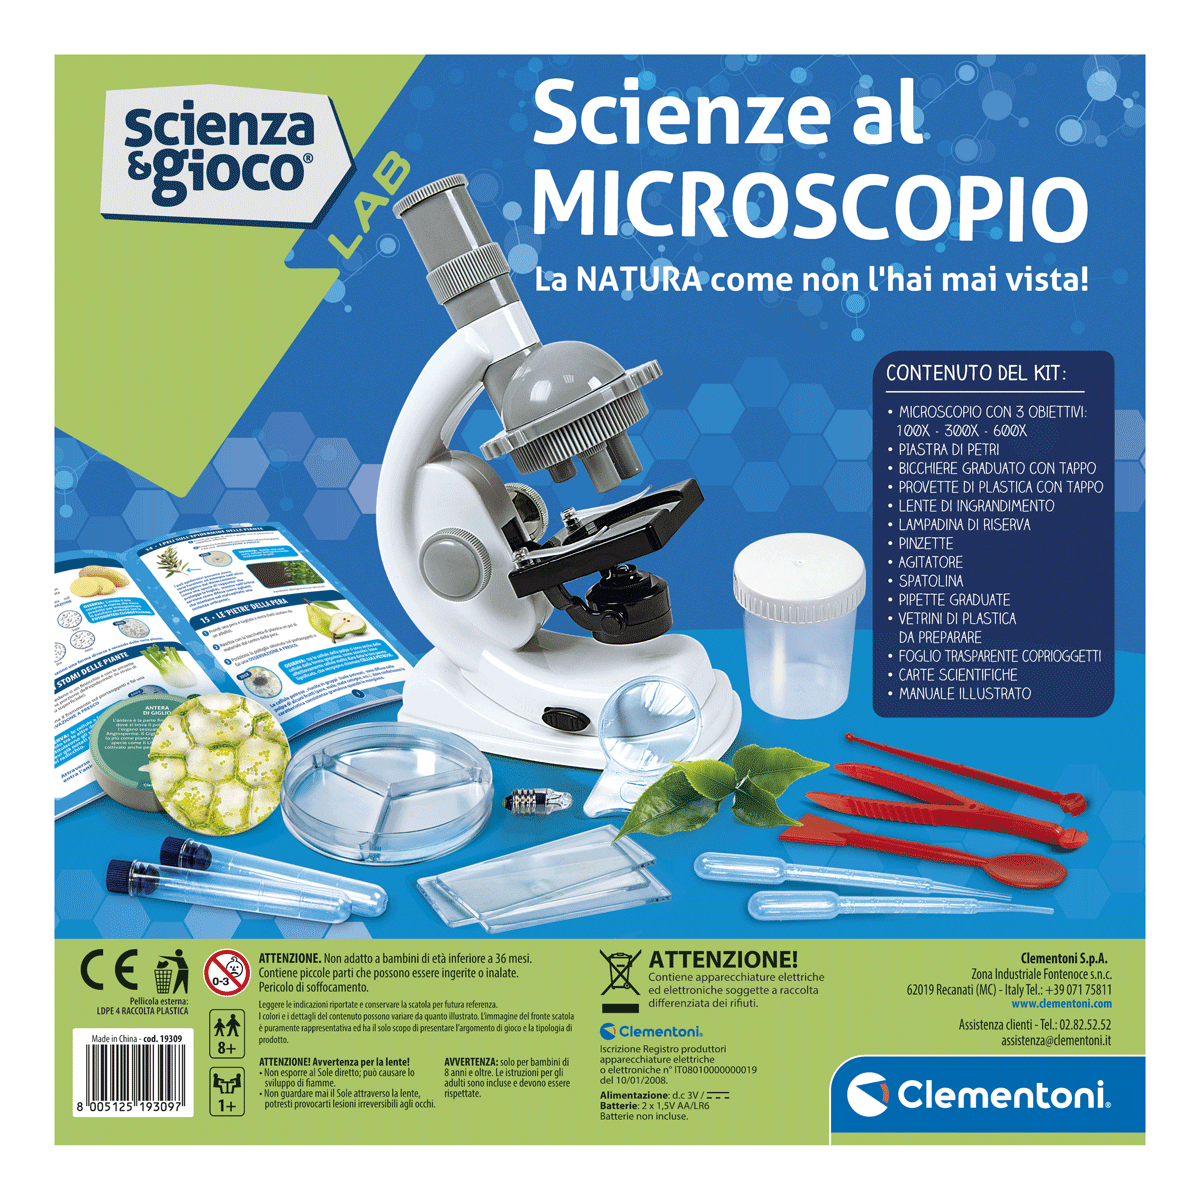 Clementoni - scienza e gioco lab - scienze al microscopio - Toys Center